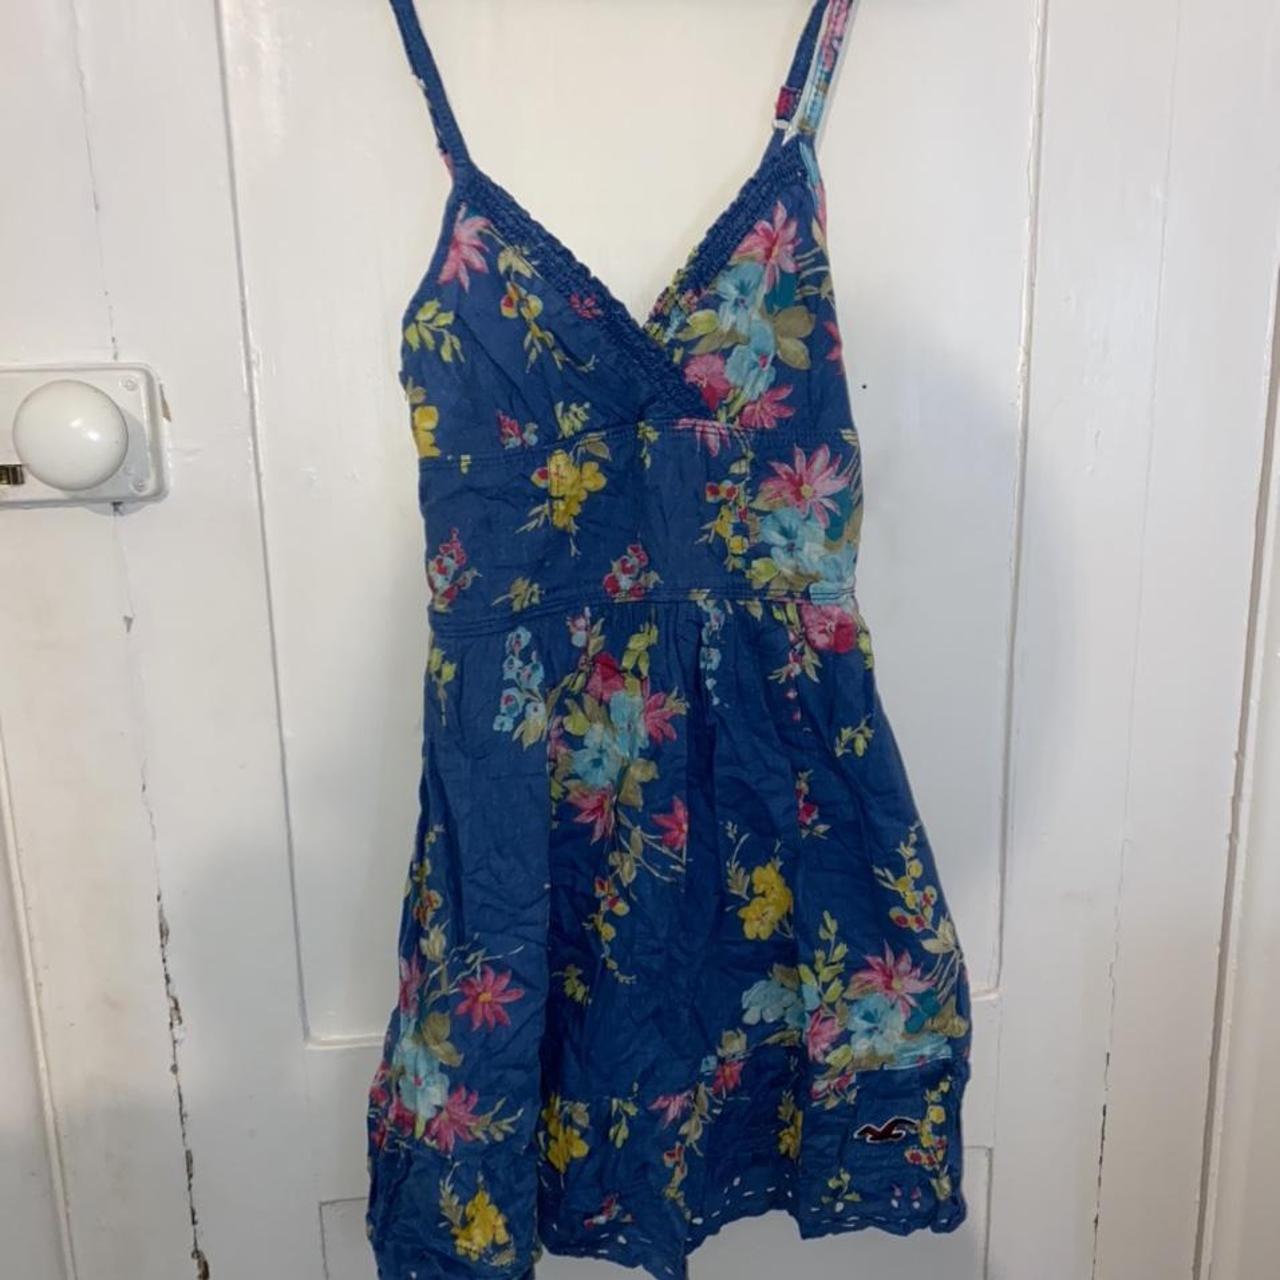 Hollister blue floral summer dress size xs. Such a... - Depop